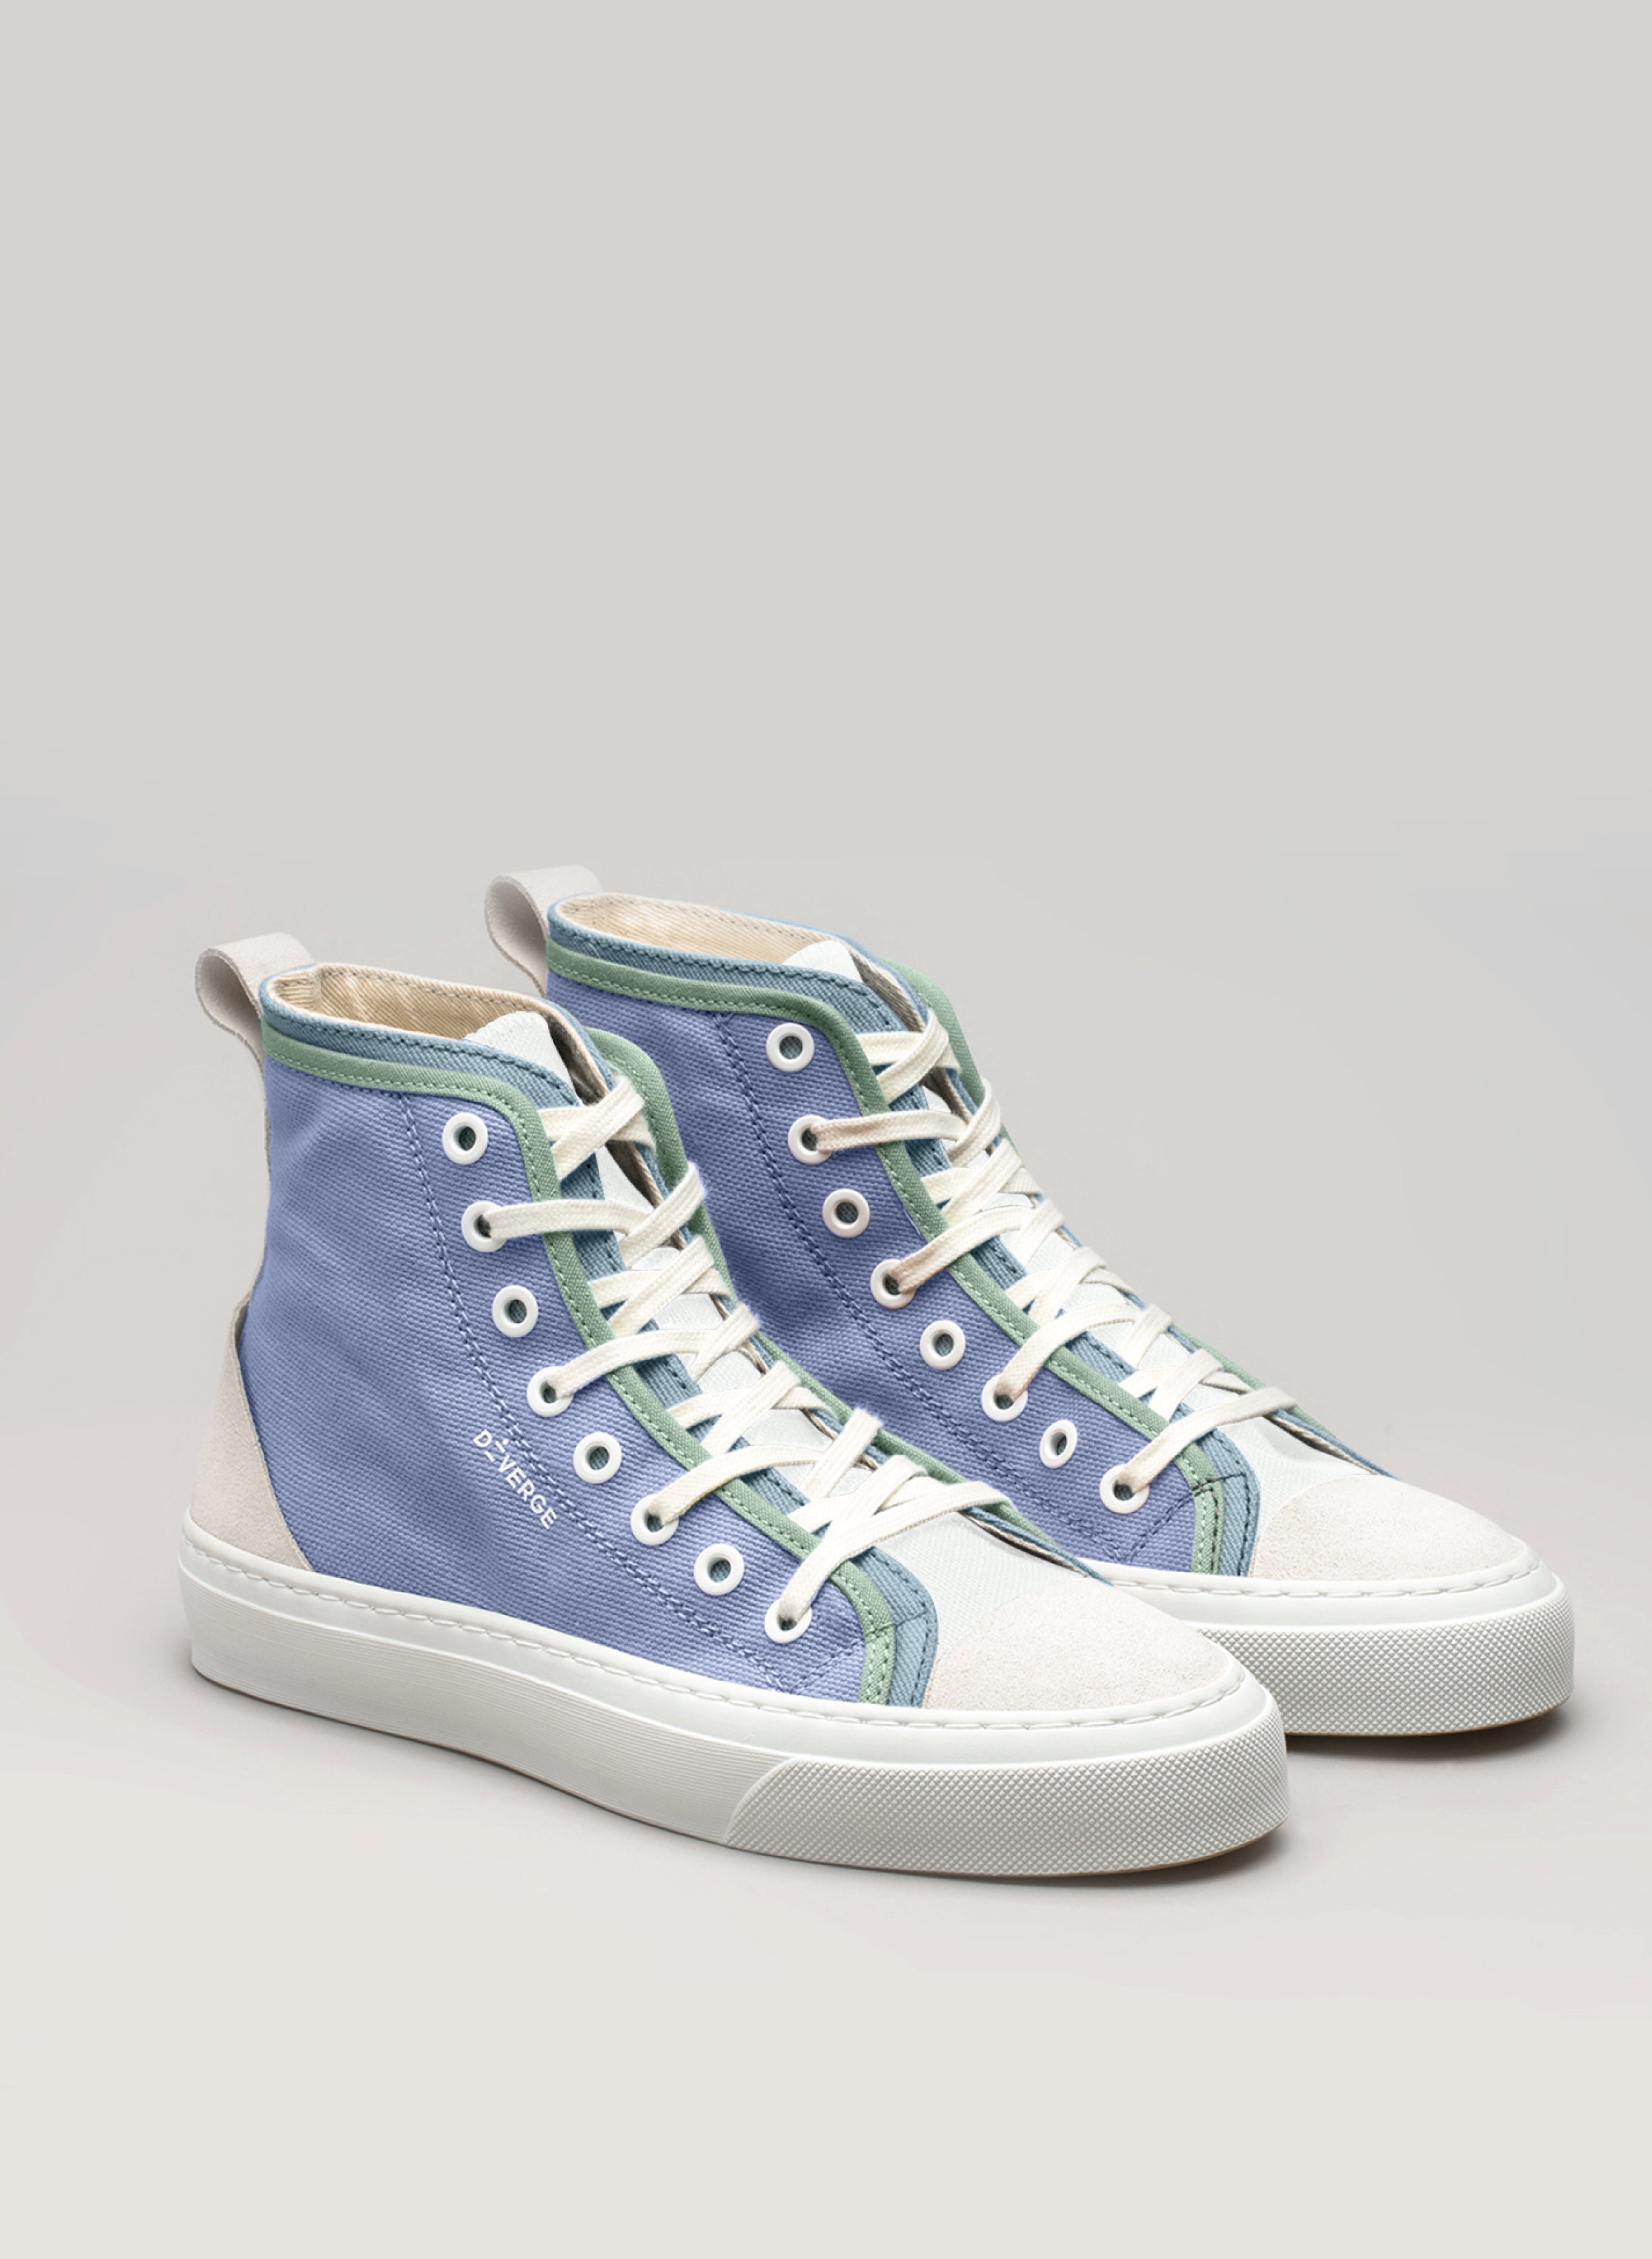 Zapatillas altas azules y verdes Diverge sneakers  con cordones blancos, un par de zapatillas personalizadas.